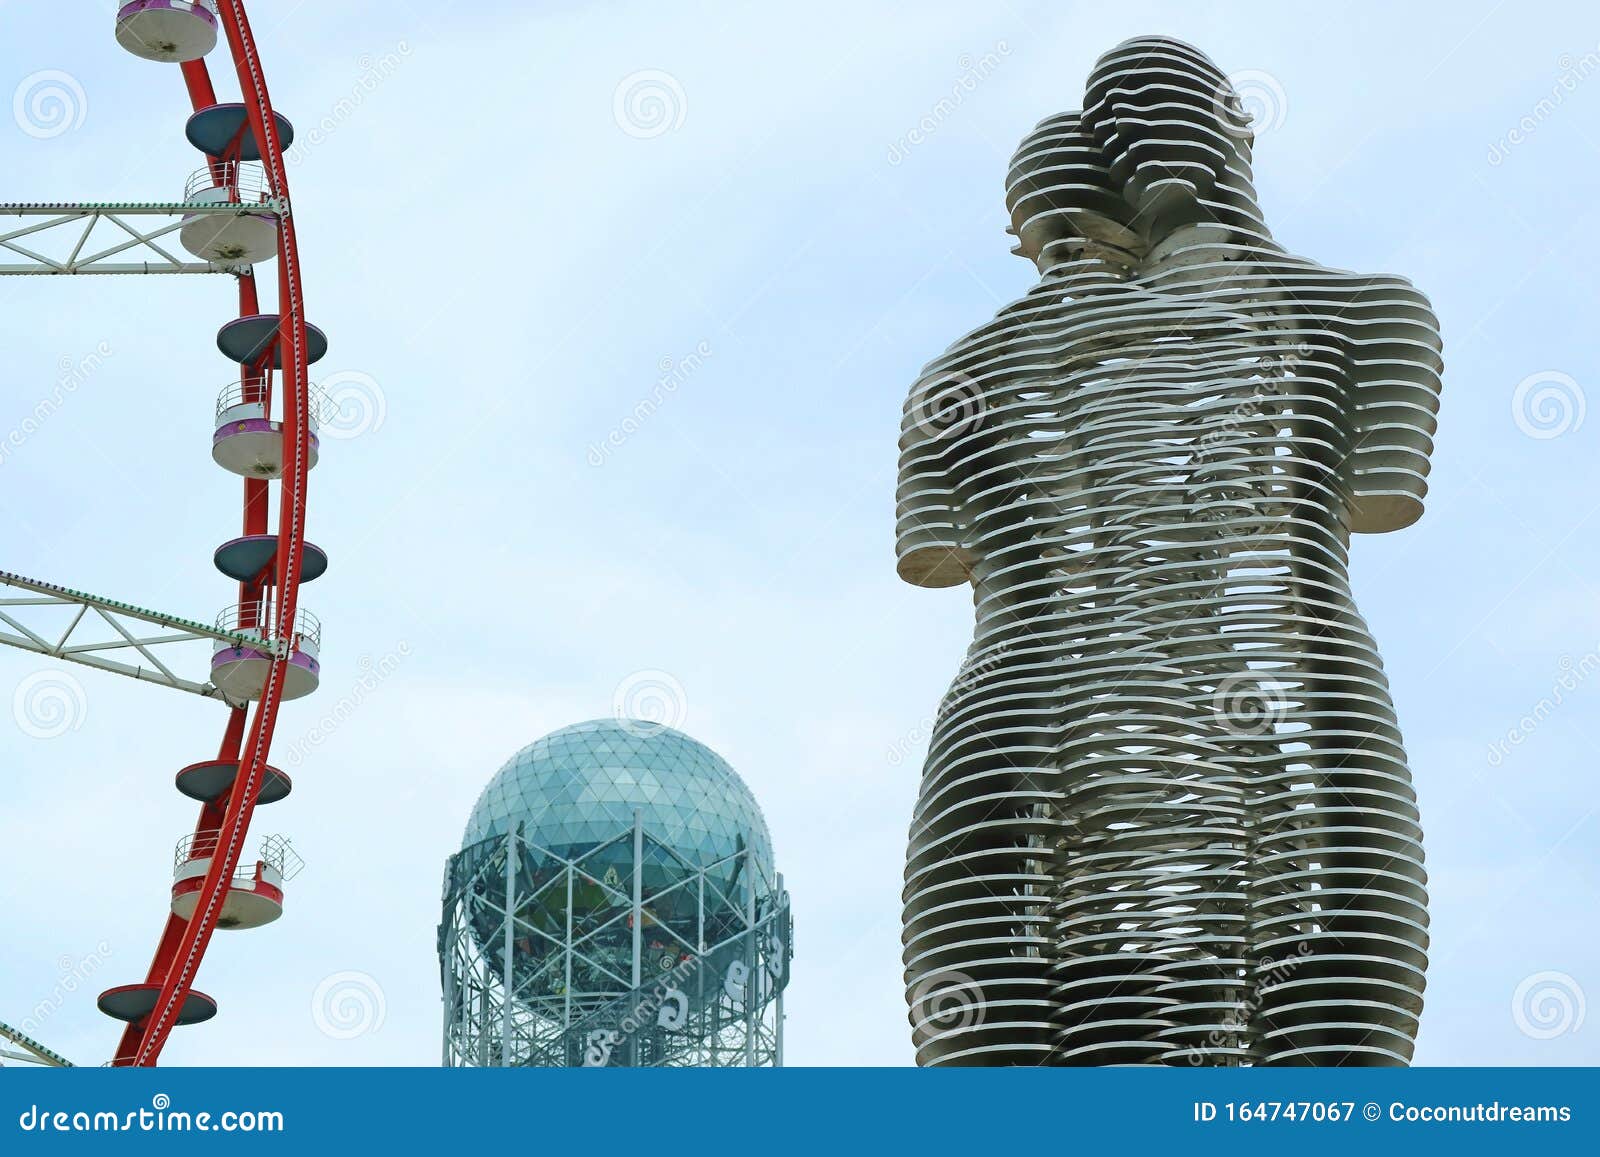 突触 : 阿里与尼诺字母塔的摩天轮雕像 影视素材. 视频 包括有 移动, 人们, 阿里, 纪念碑, 艺术 - 286813616